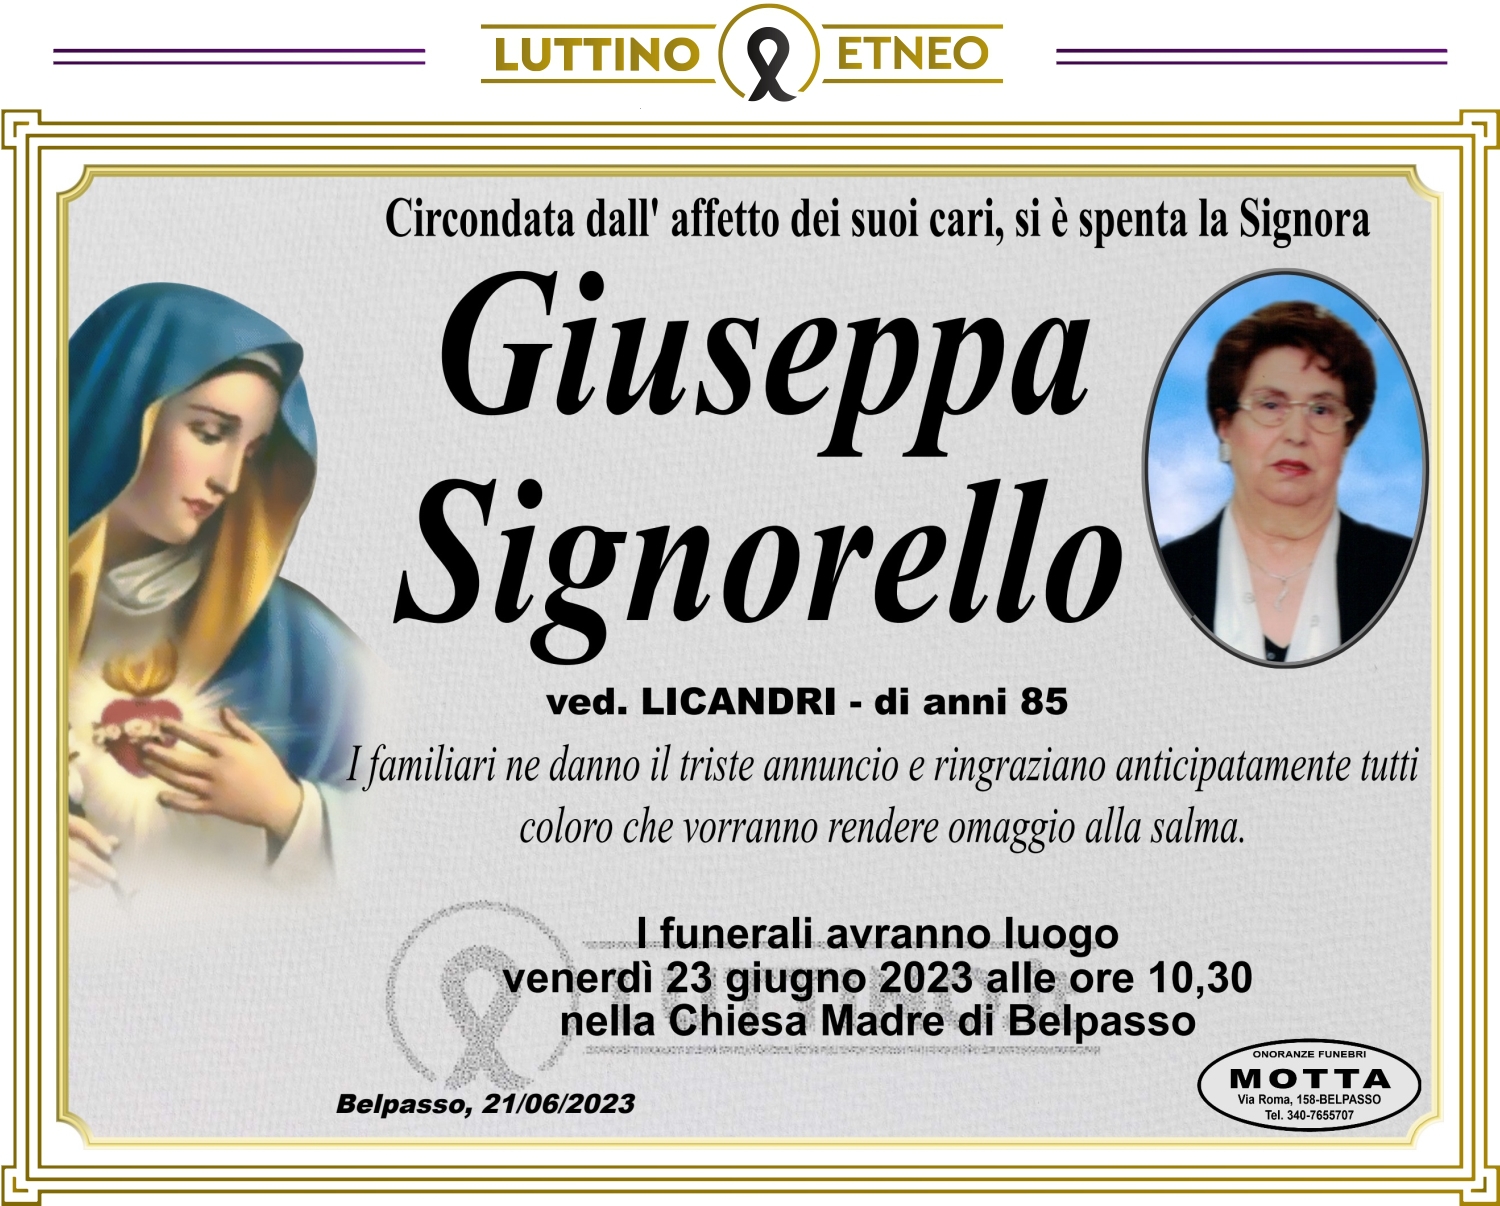 Giuseppa Signorello